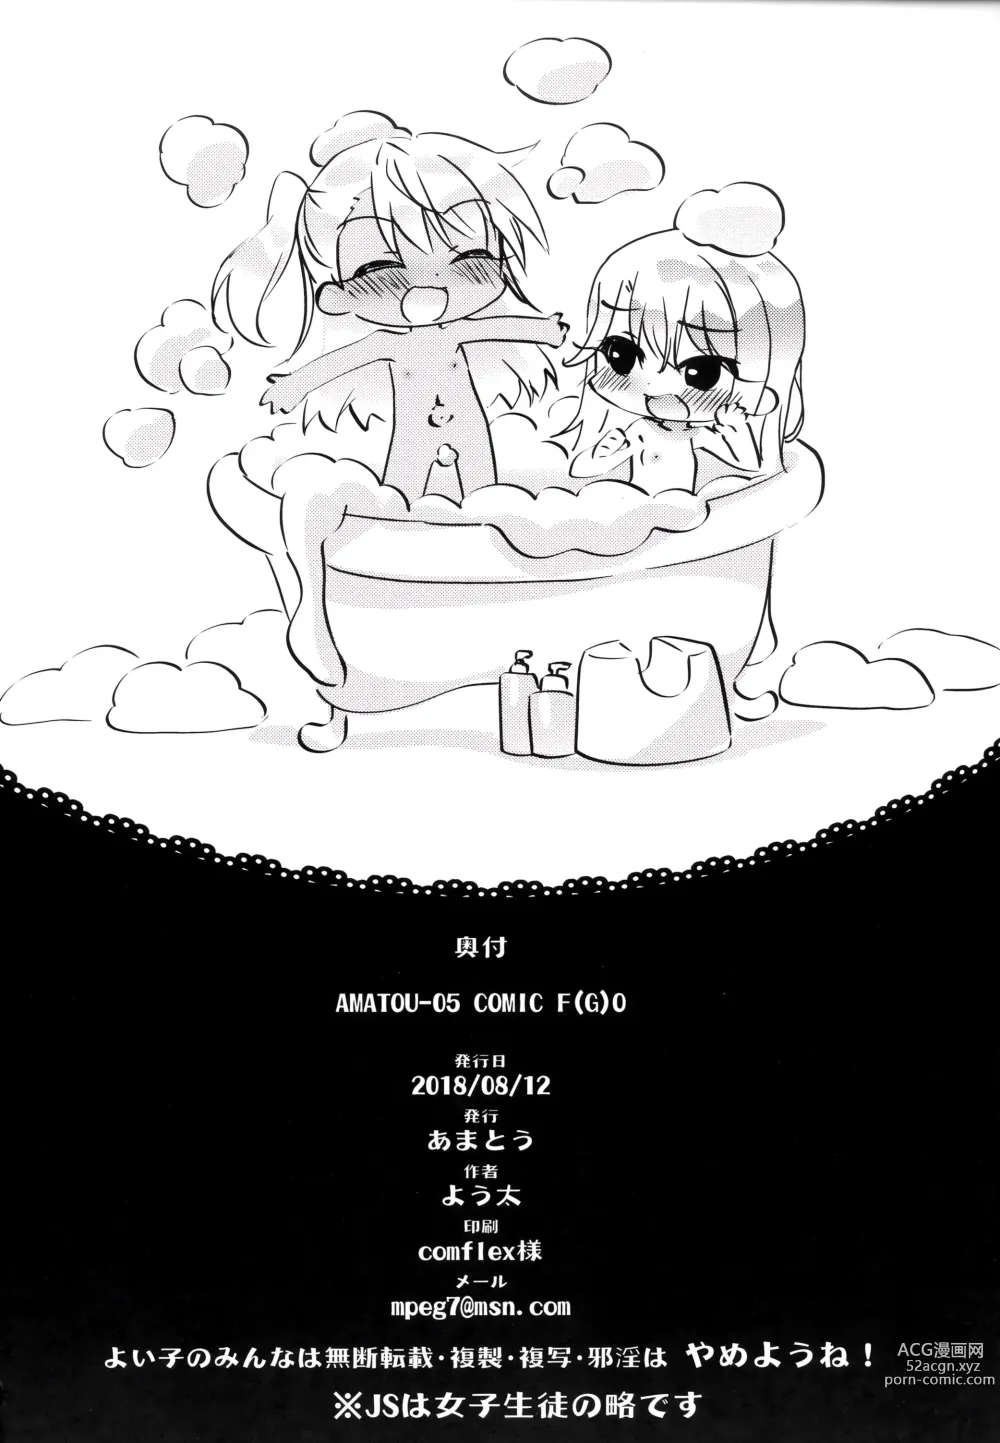 Page 26 of doujinshi AMATOU-05 COMIC F(G)O